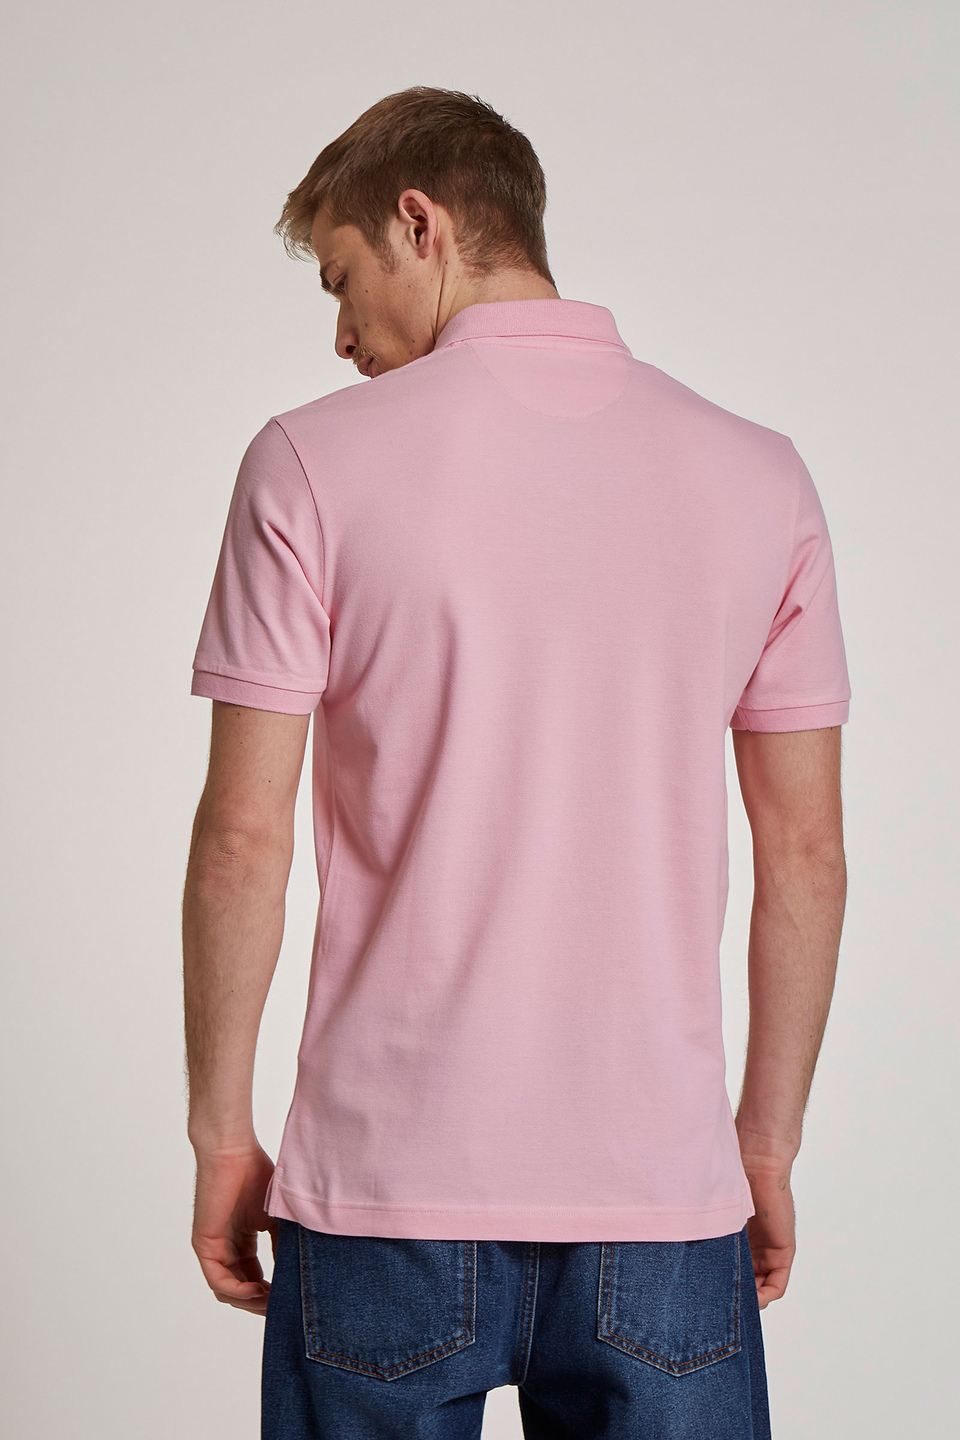 Herren-Poloshirt mit kurzen Ärmeln im regular fit - La Martina - Official Online Shop